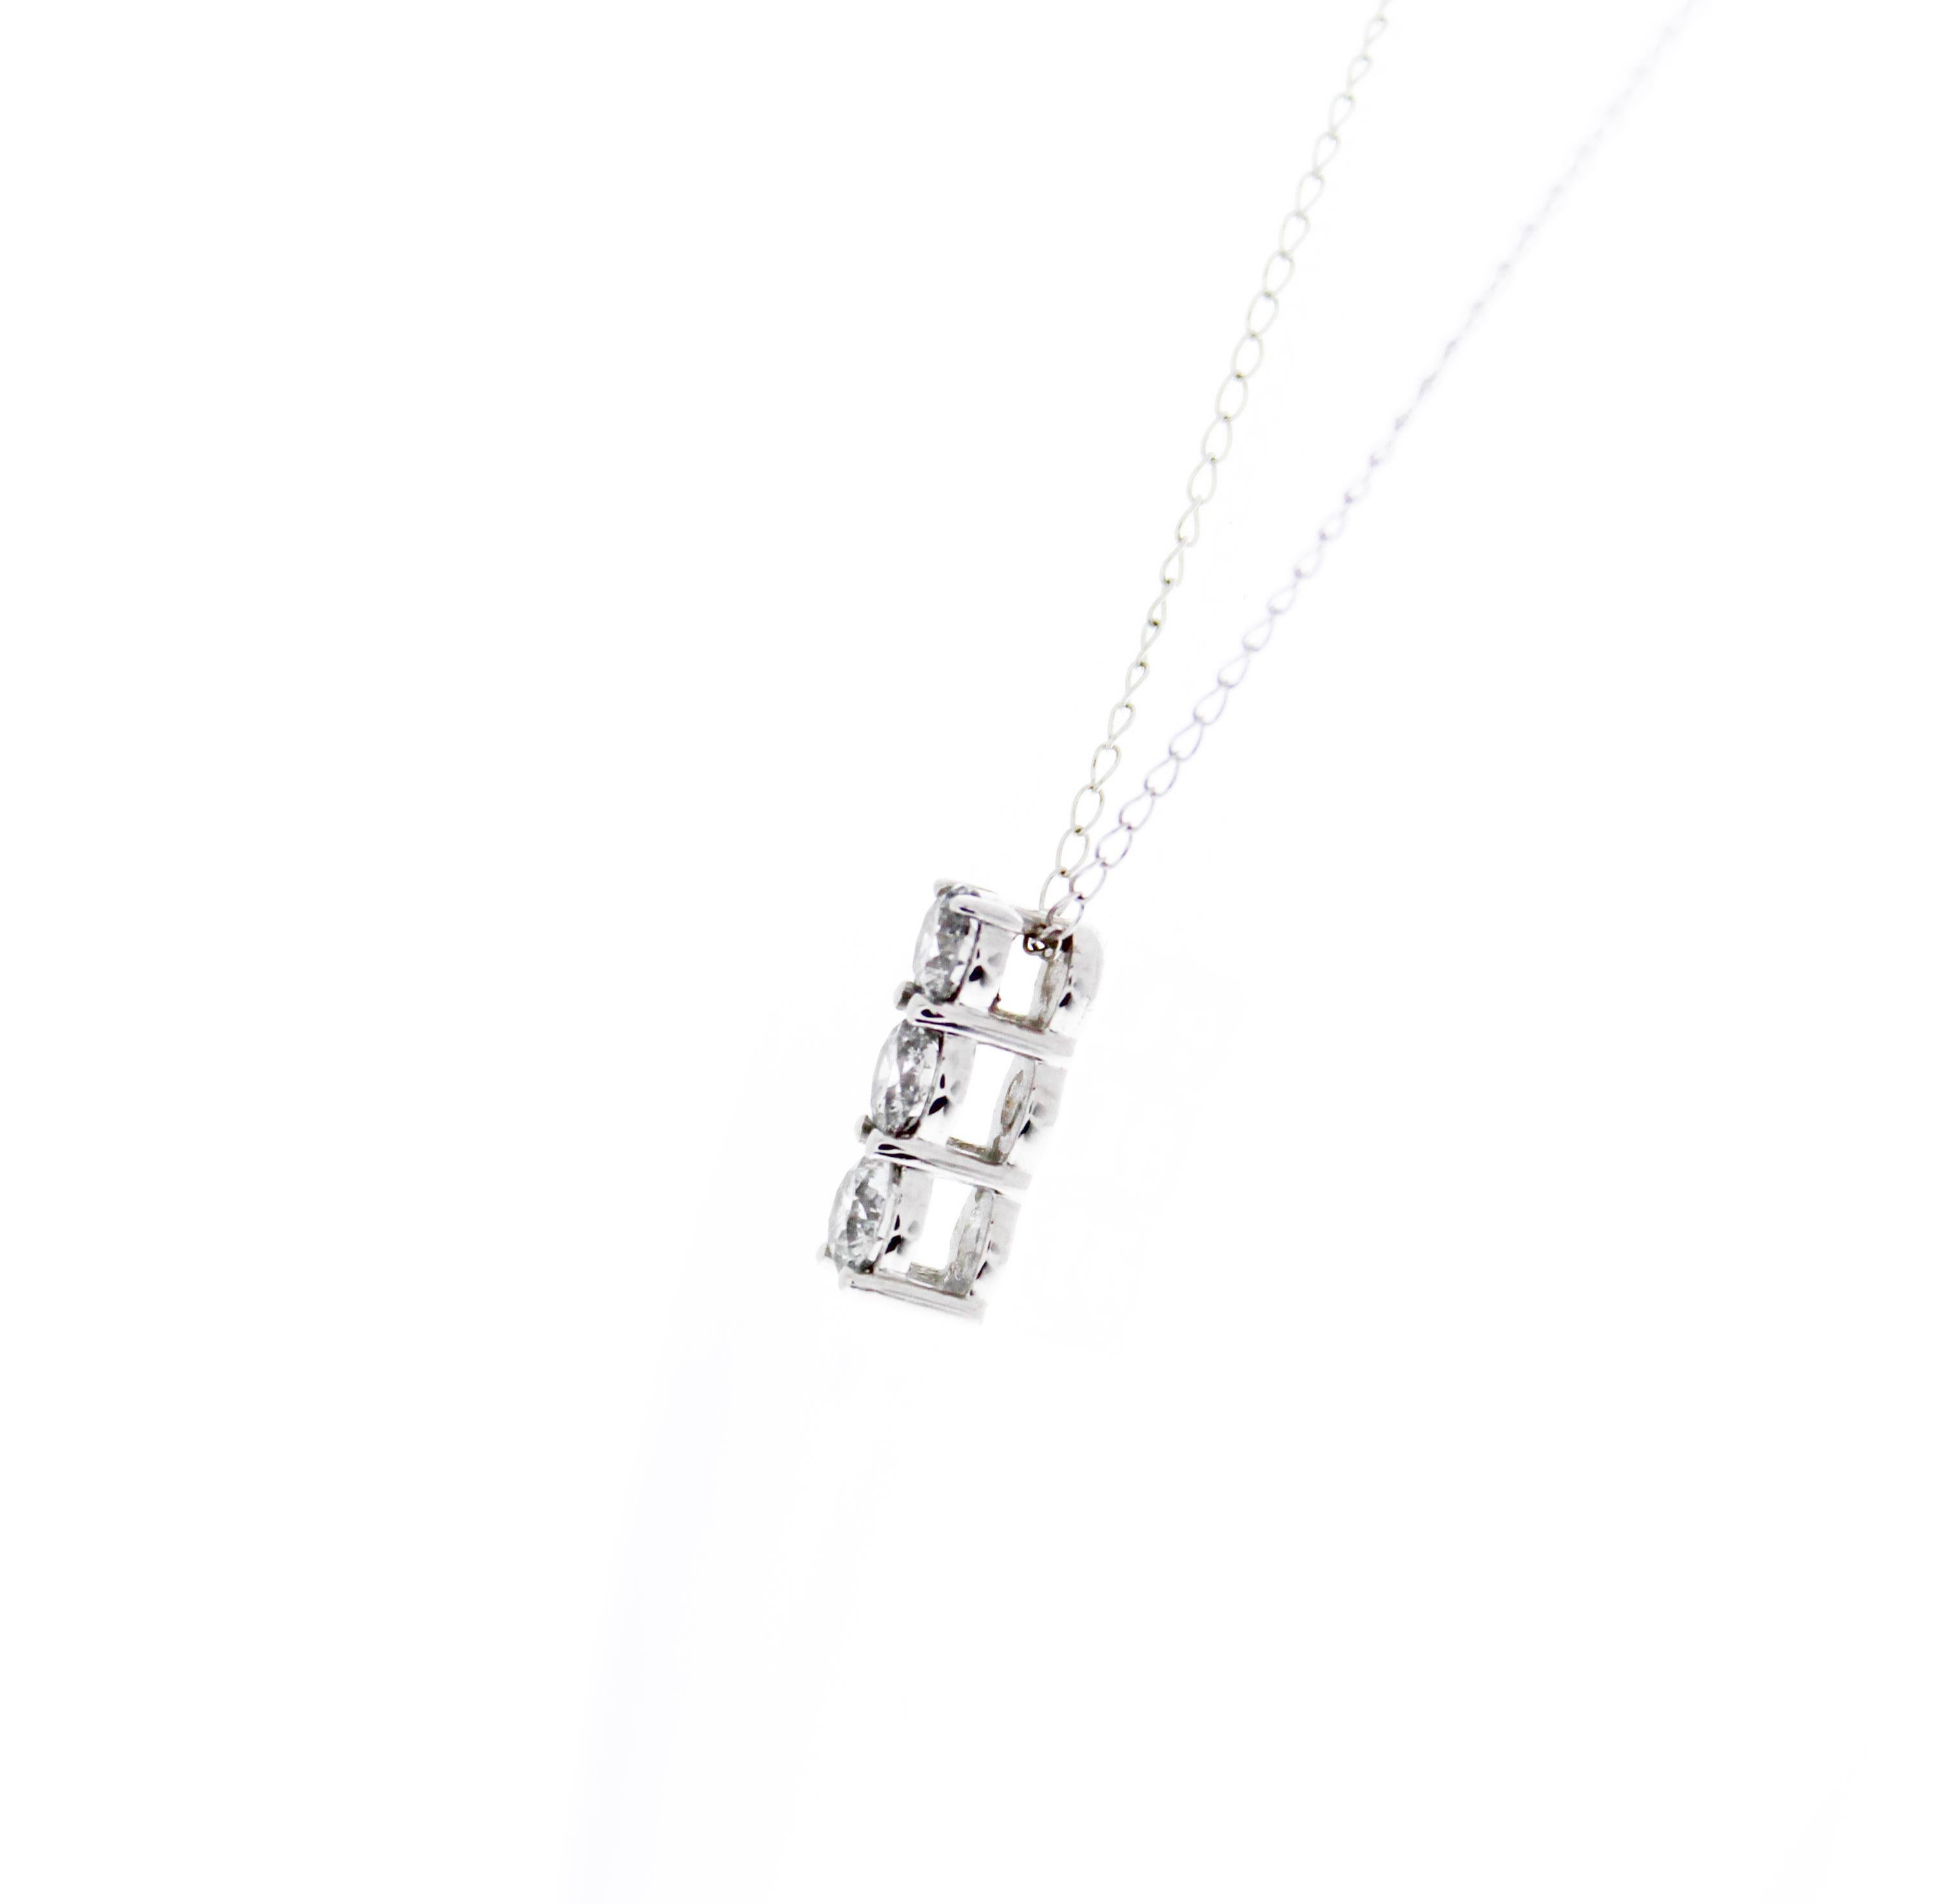 .75 carat diamond necklace